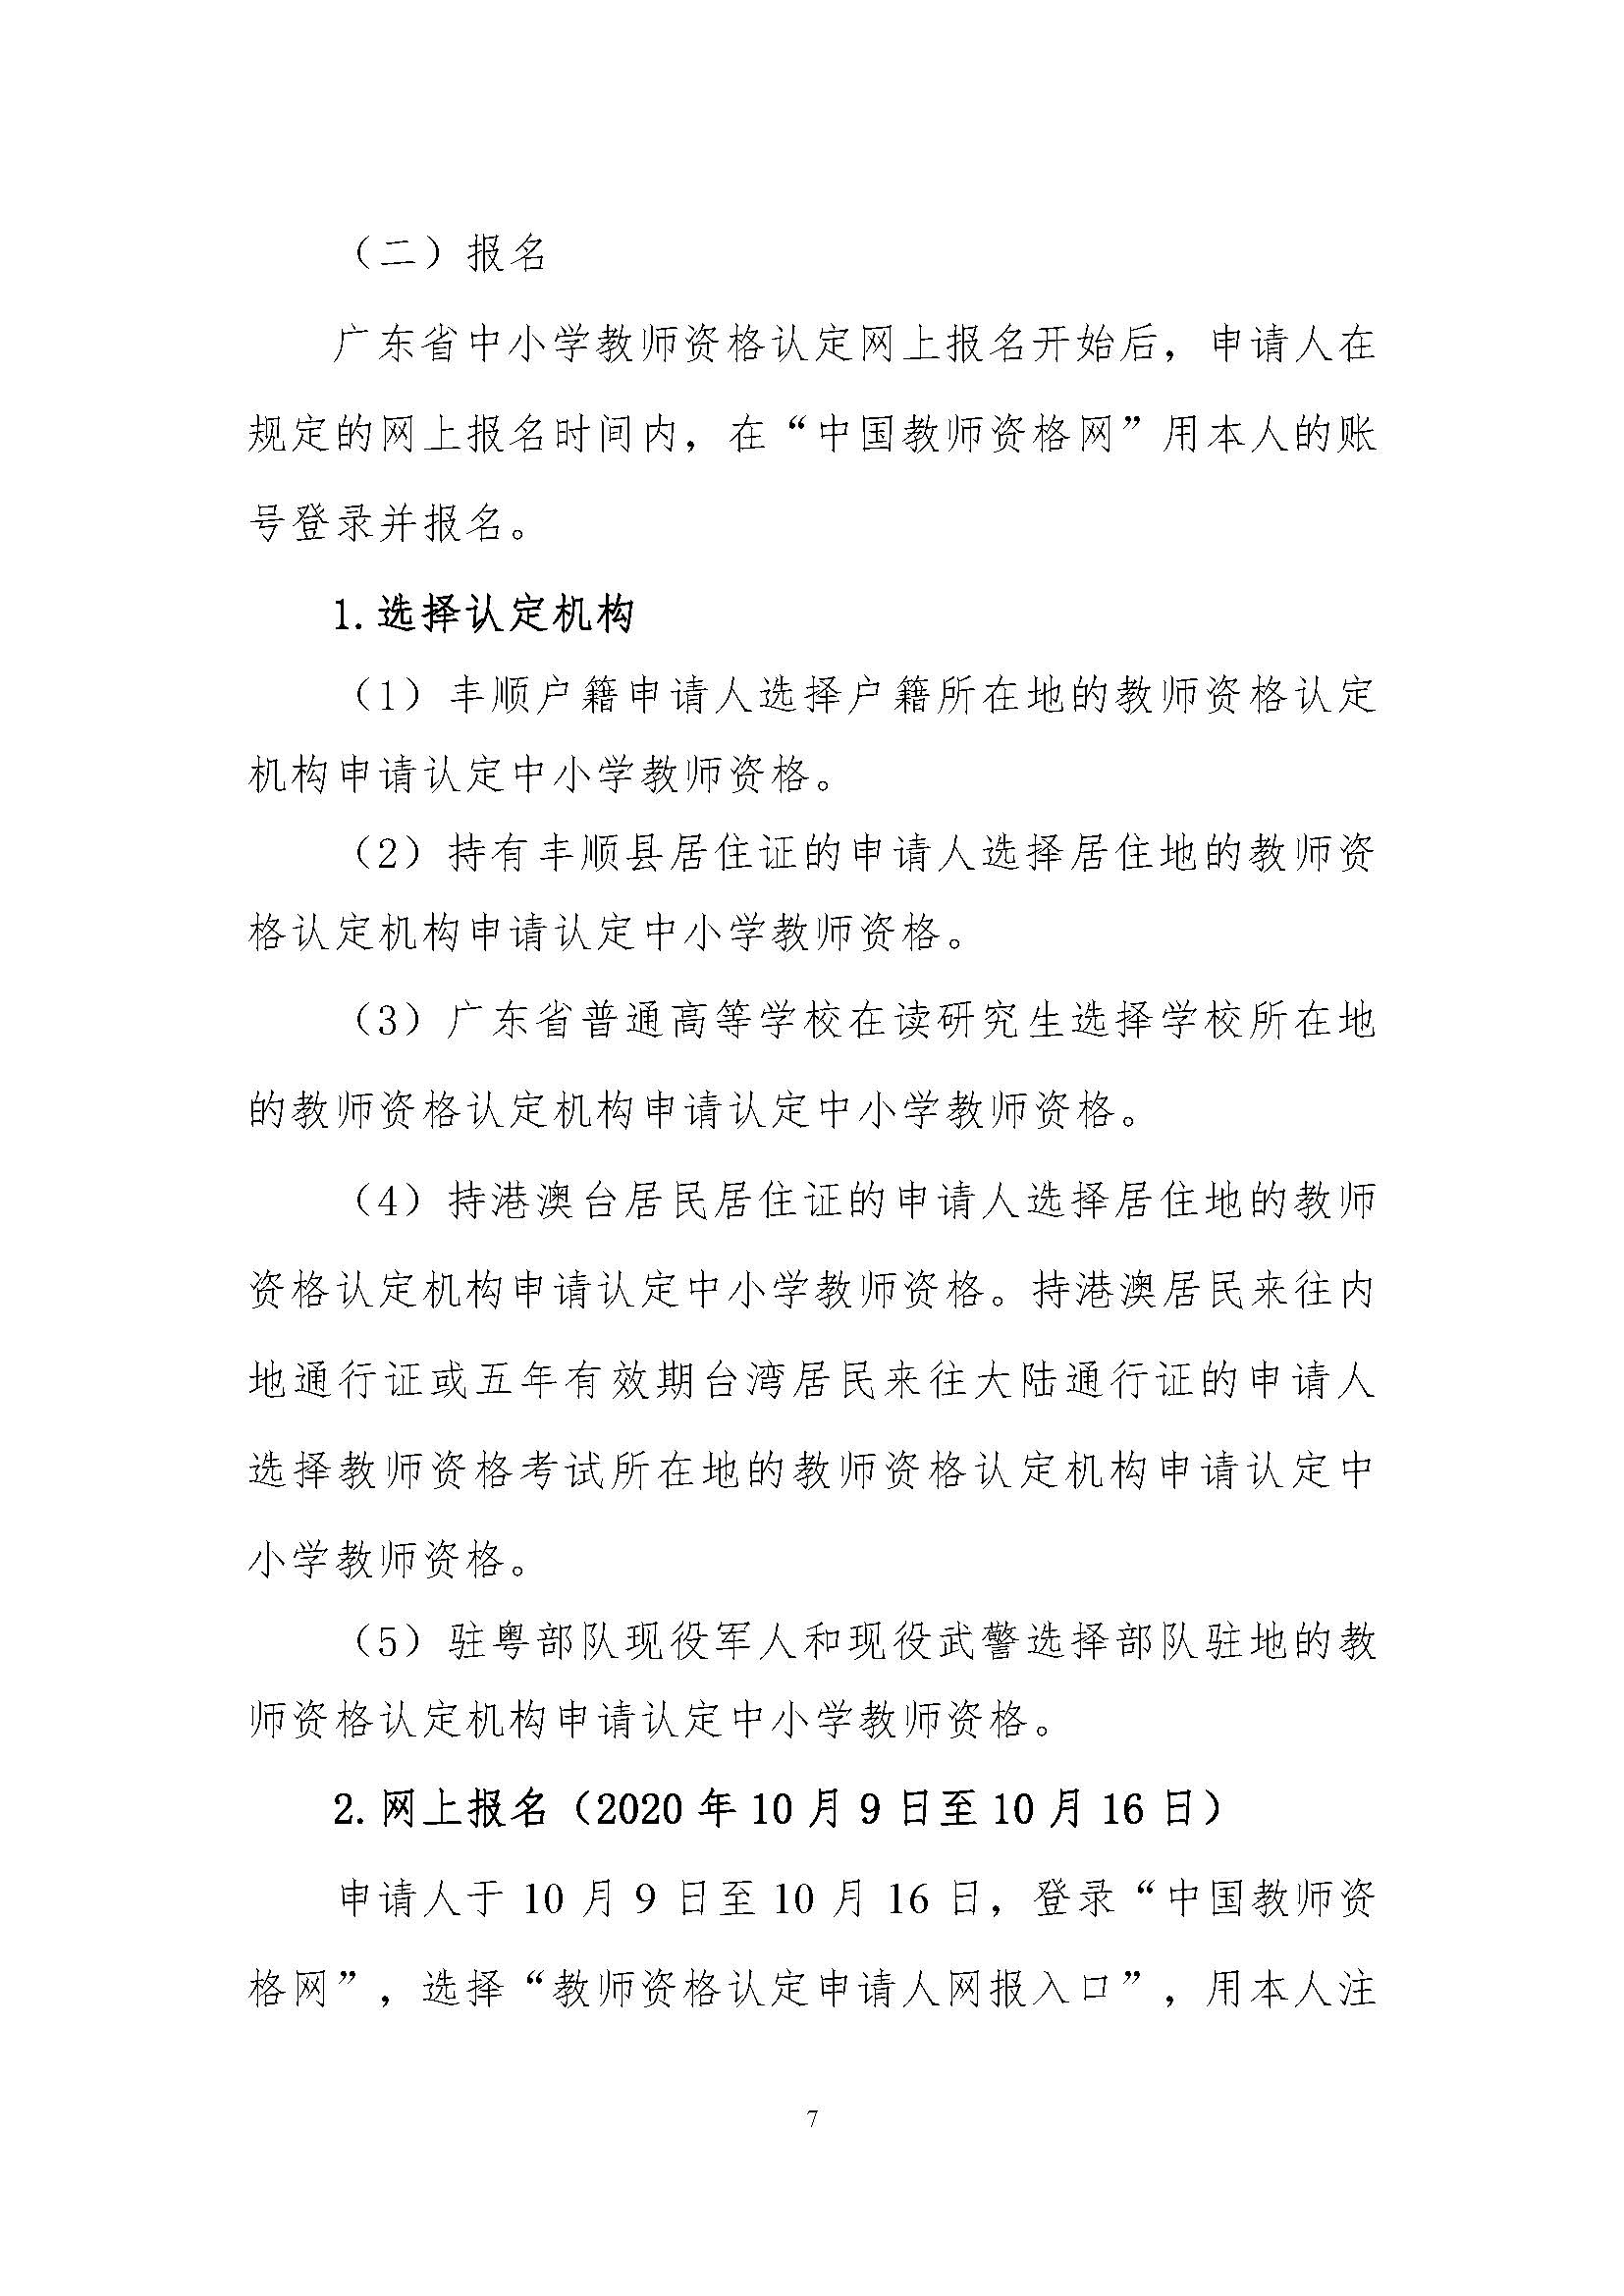 丰顺县2020年下半年中小学教师资格认定公告_页面_07.jpg